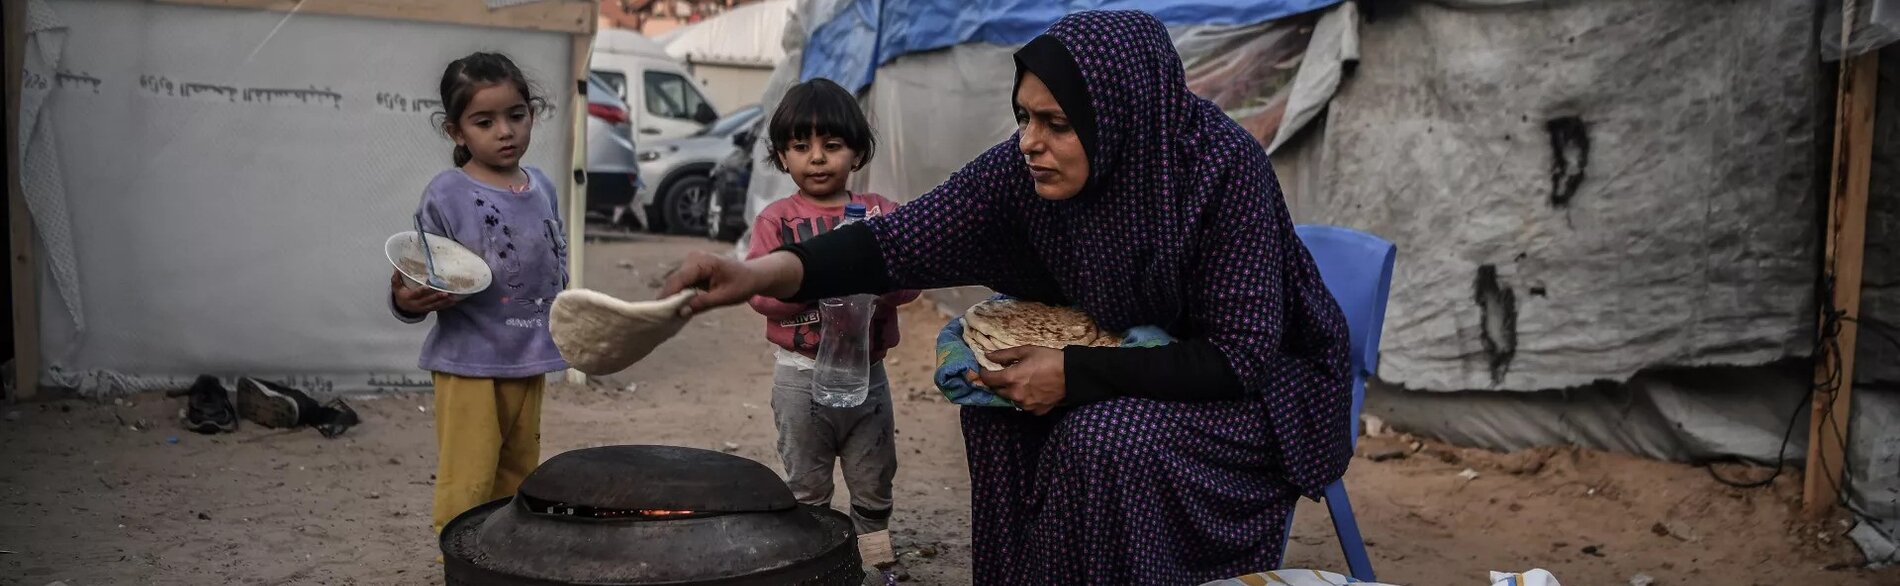 وفقًا لبرنامج الأغذية العالمي، لا يتّبع نحو 90 في المائة من الأمهات والأطفال في غزة نظامًا غذائيًا متنوعًا. تصوير اليونيسف/إياد البابا